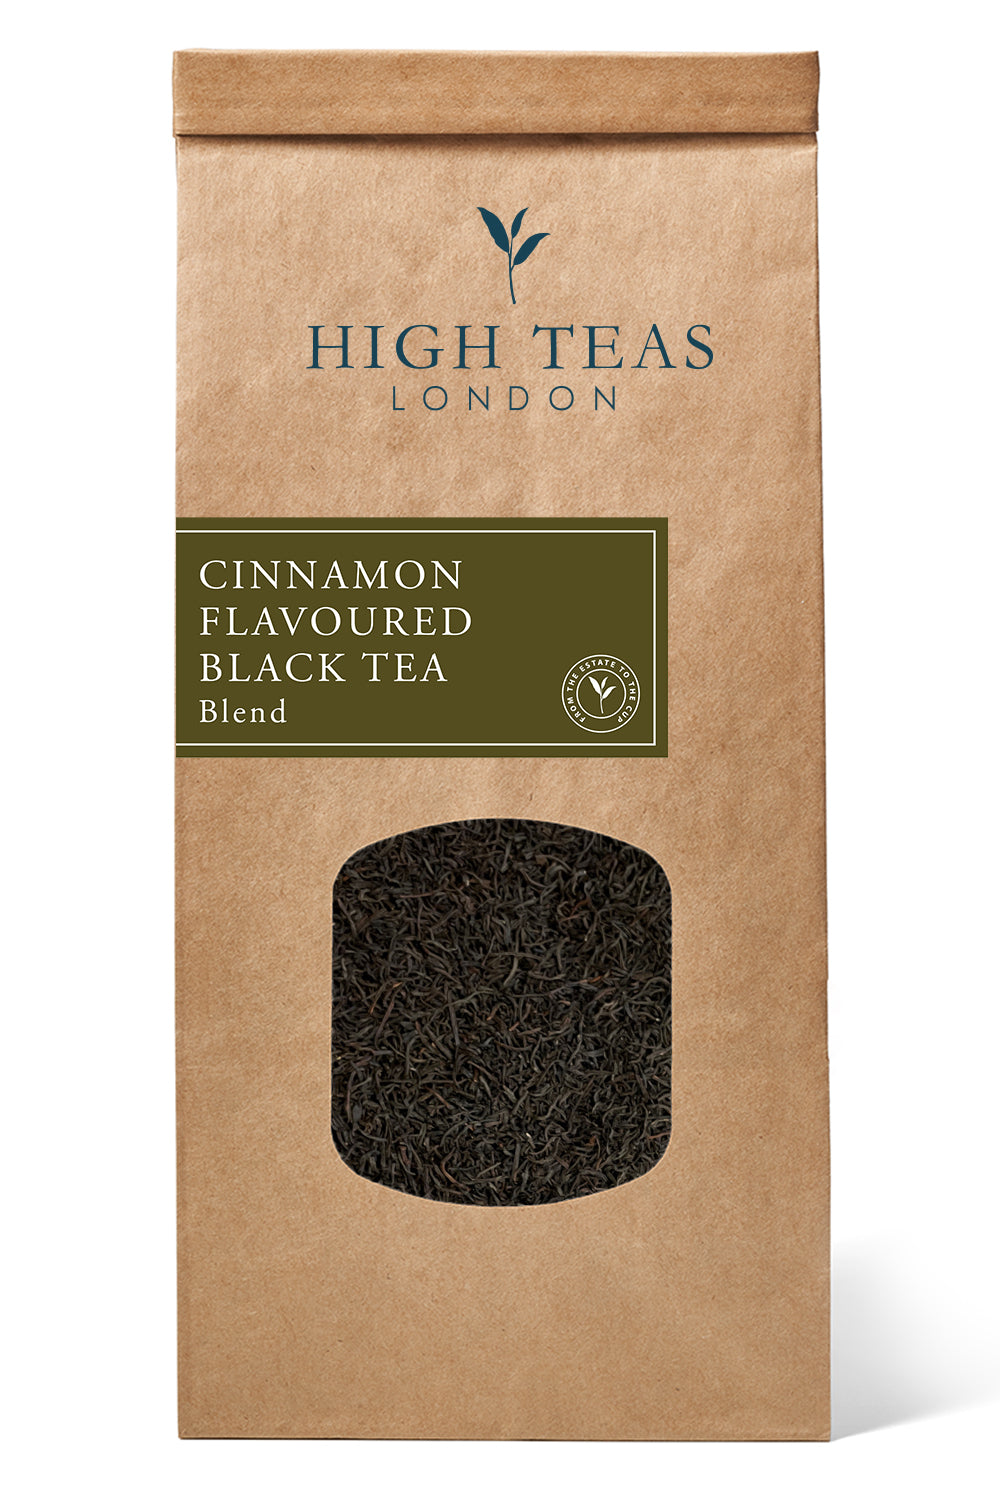 Cinnamon Flavoured Black Tea-250g-Loose Leaf Tea-High Teas